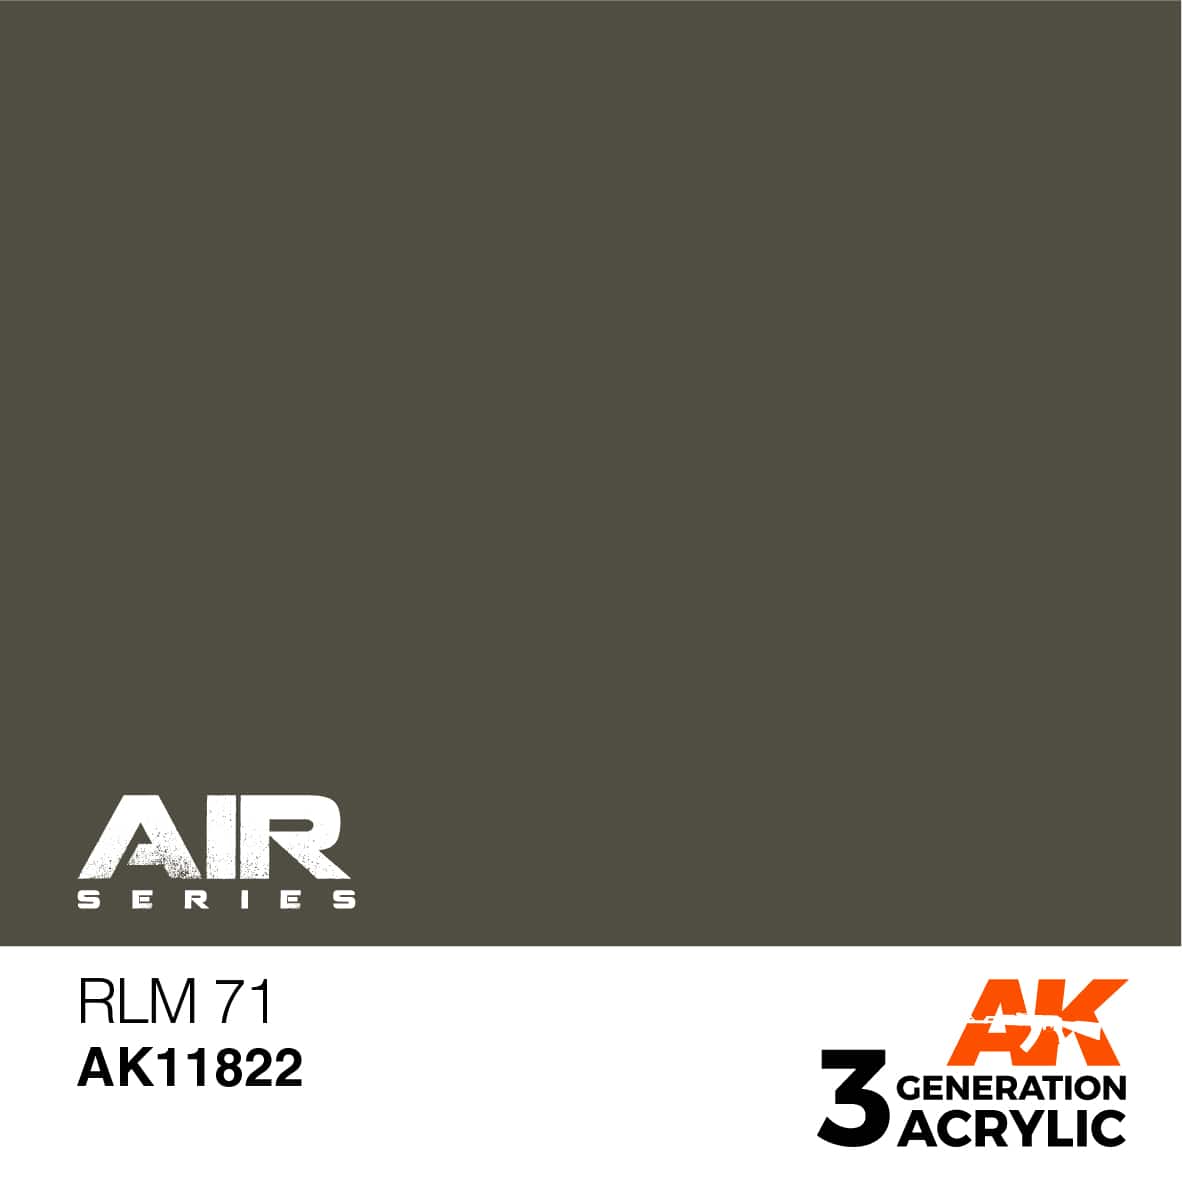 RLM 71 – AIR